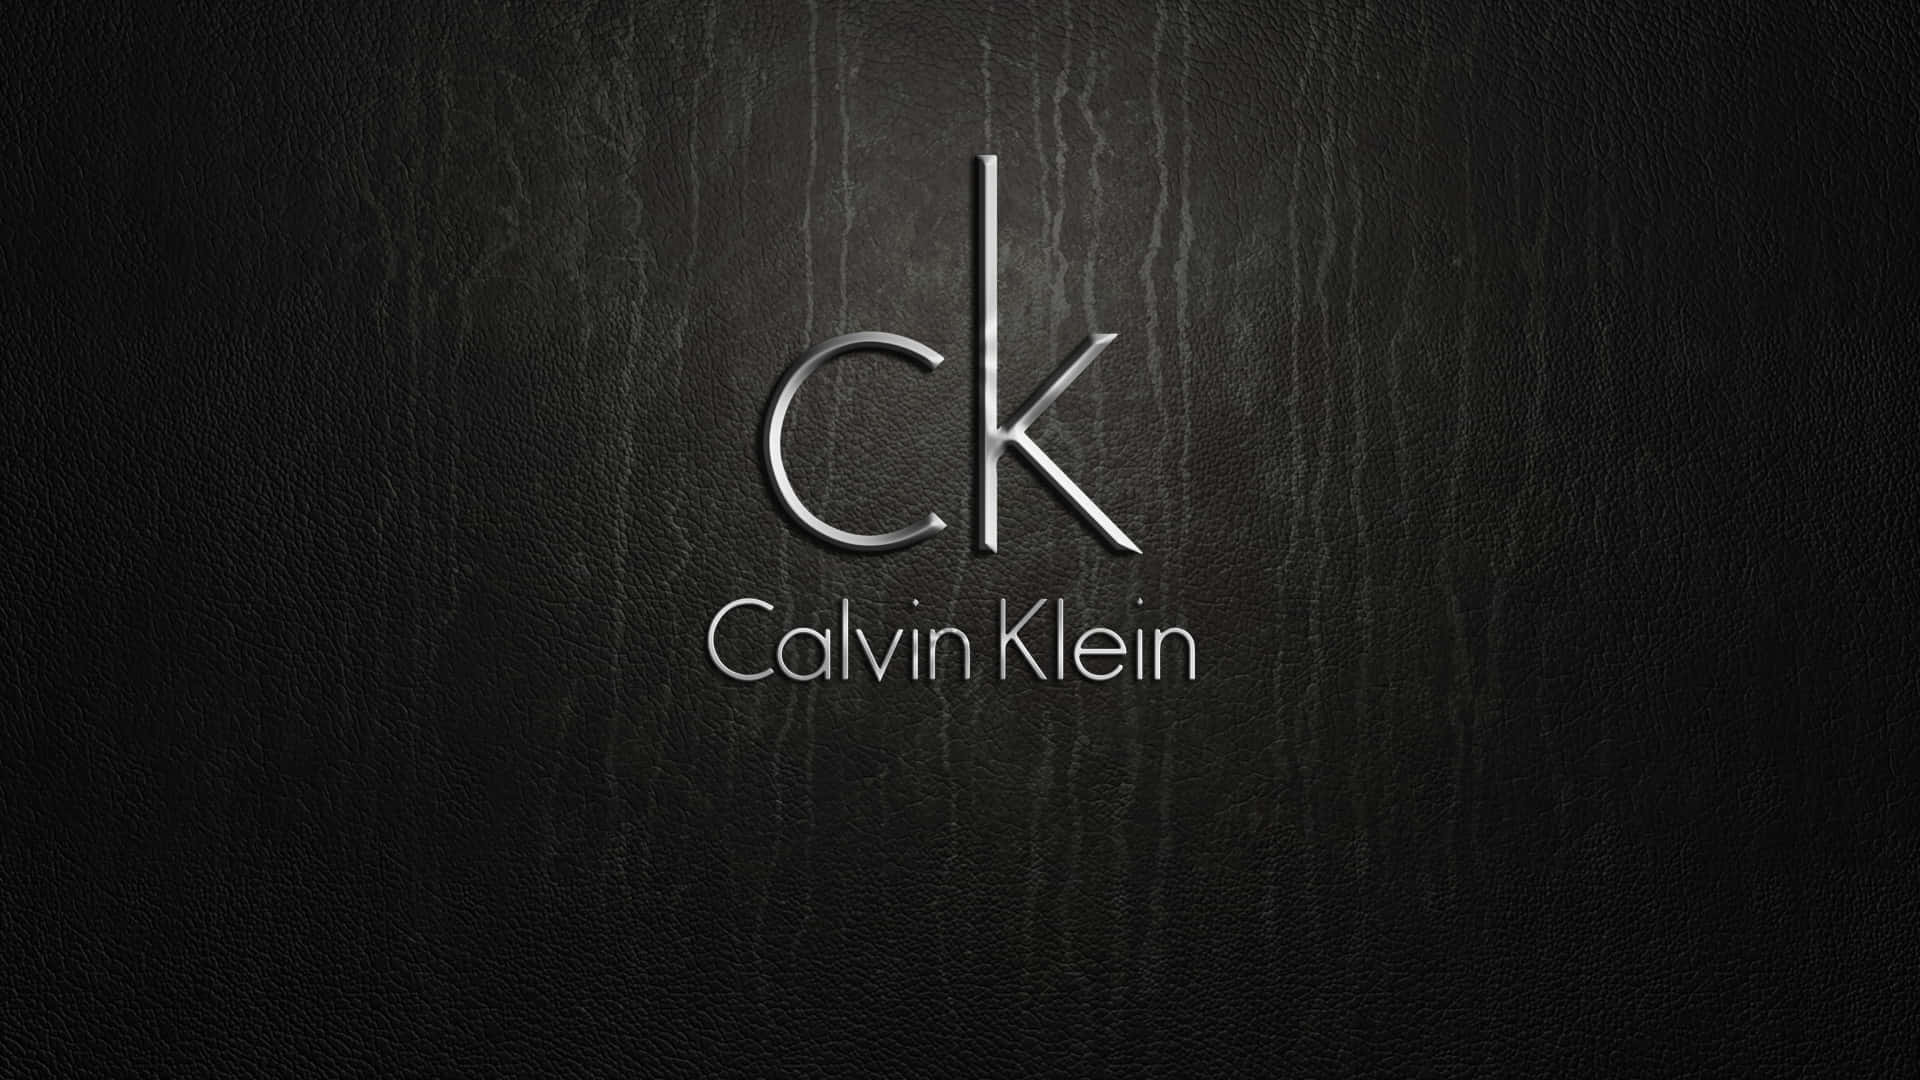 Fondods De Calvin Klein